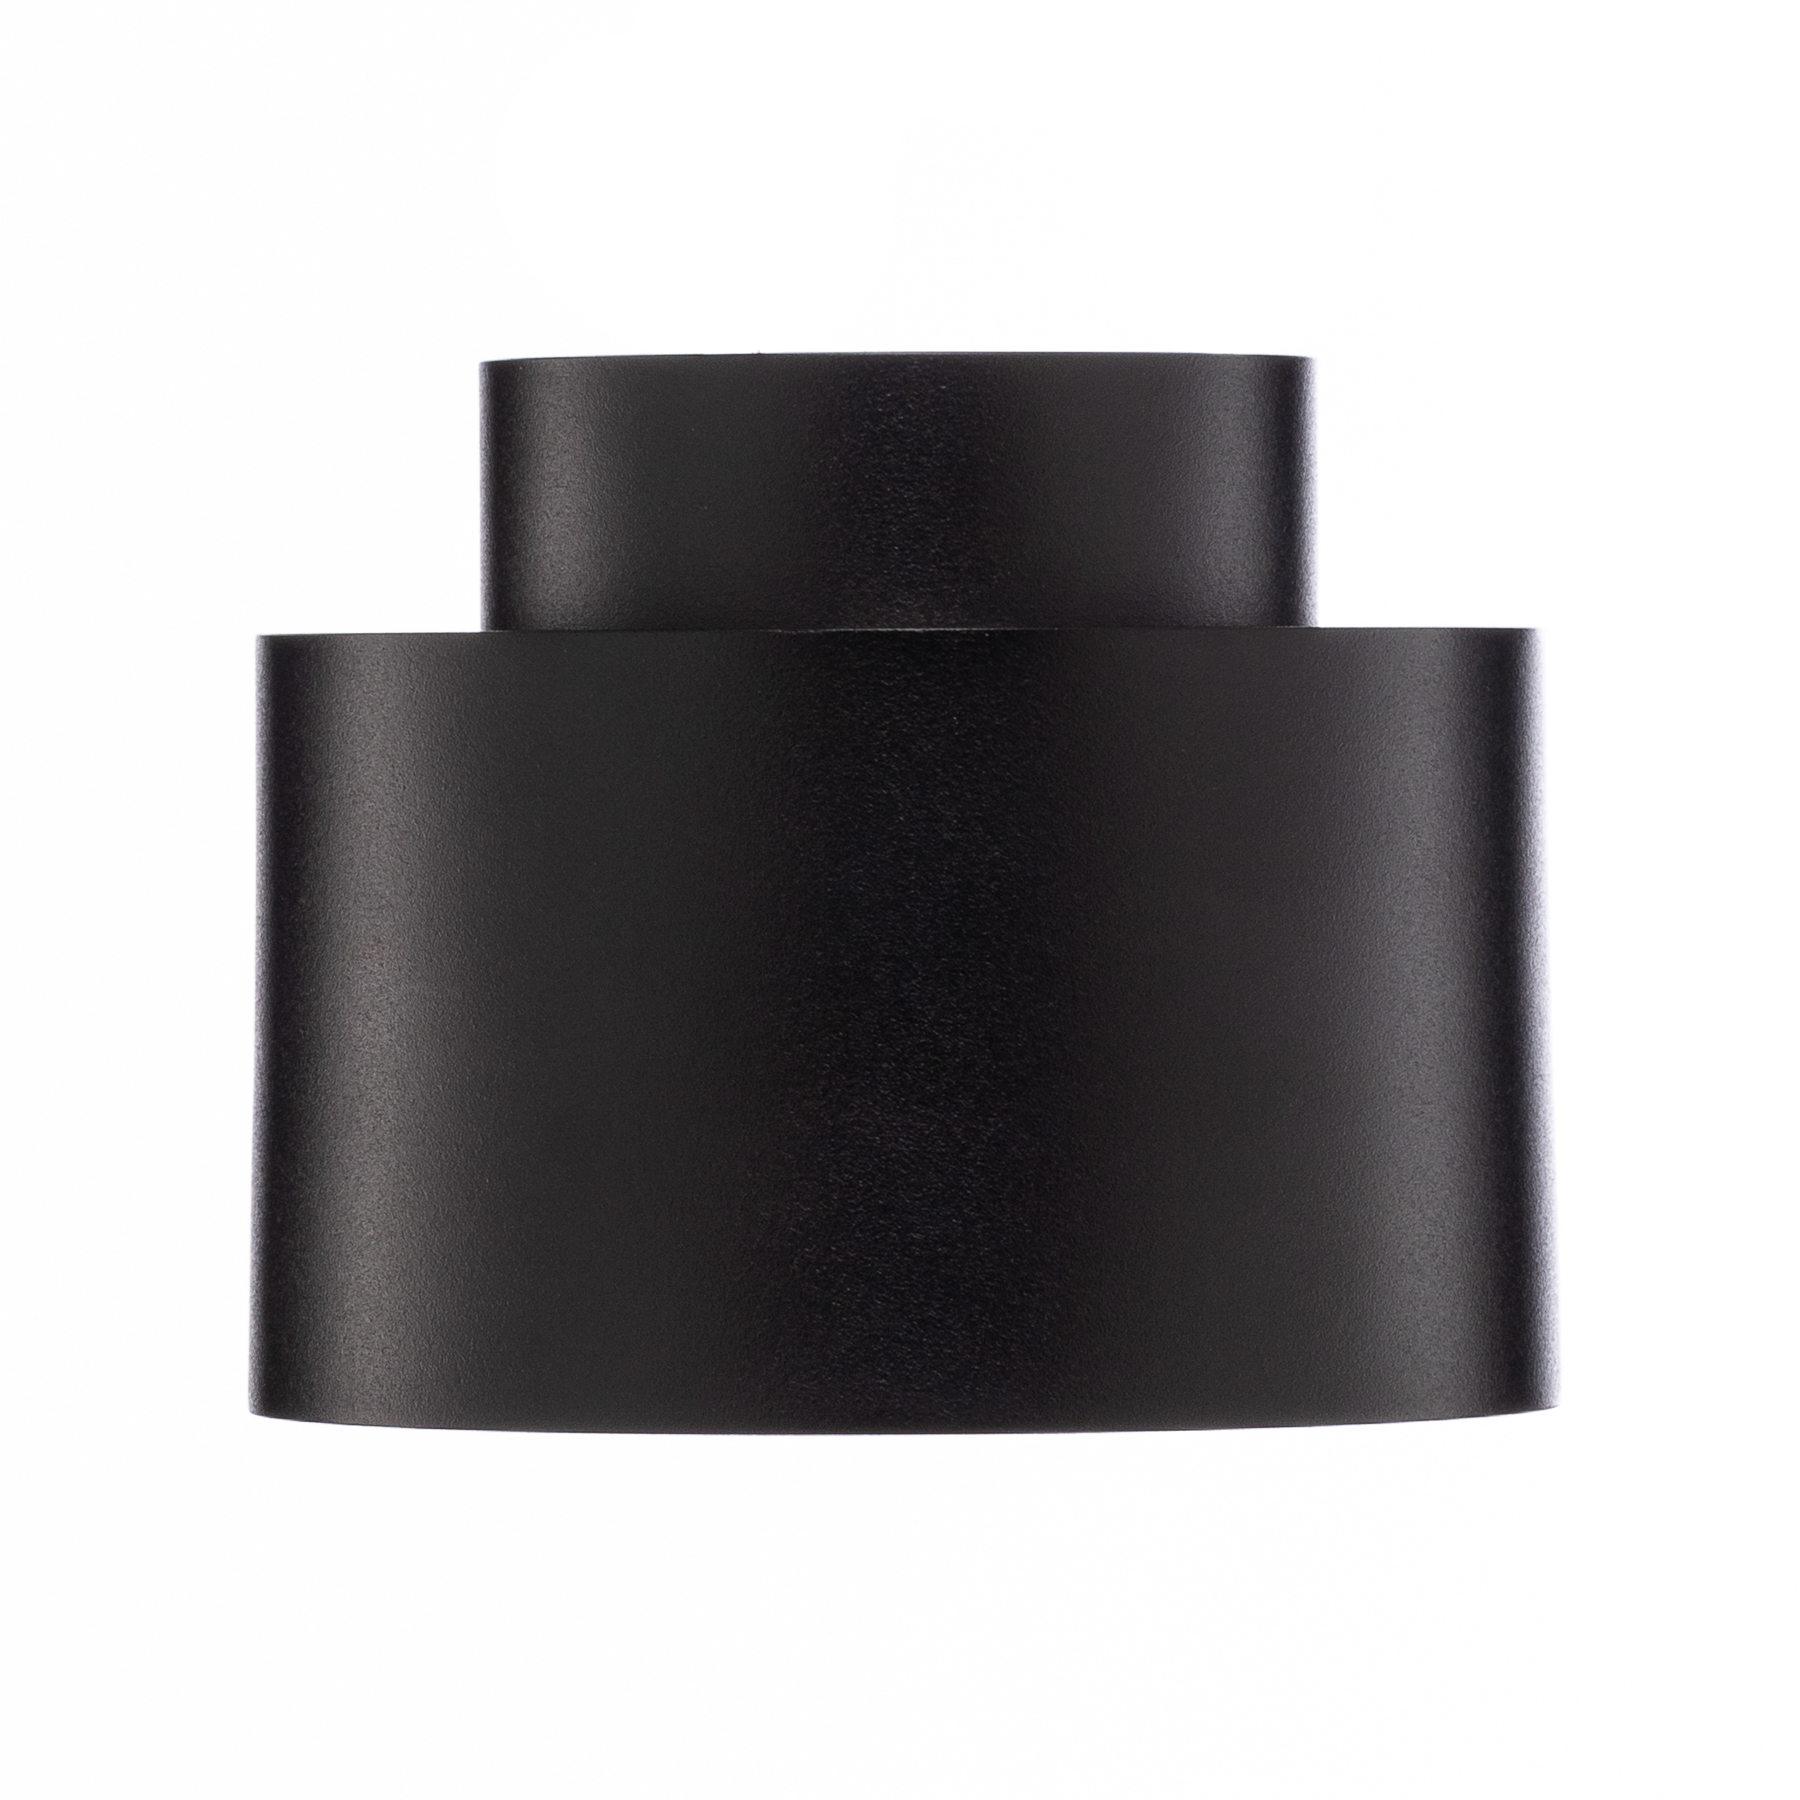 Lindby spot LED Nivoria, 11 x 8,8 cm, noir sable, 4 pièces